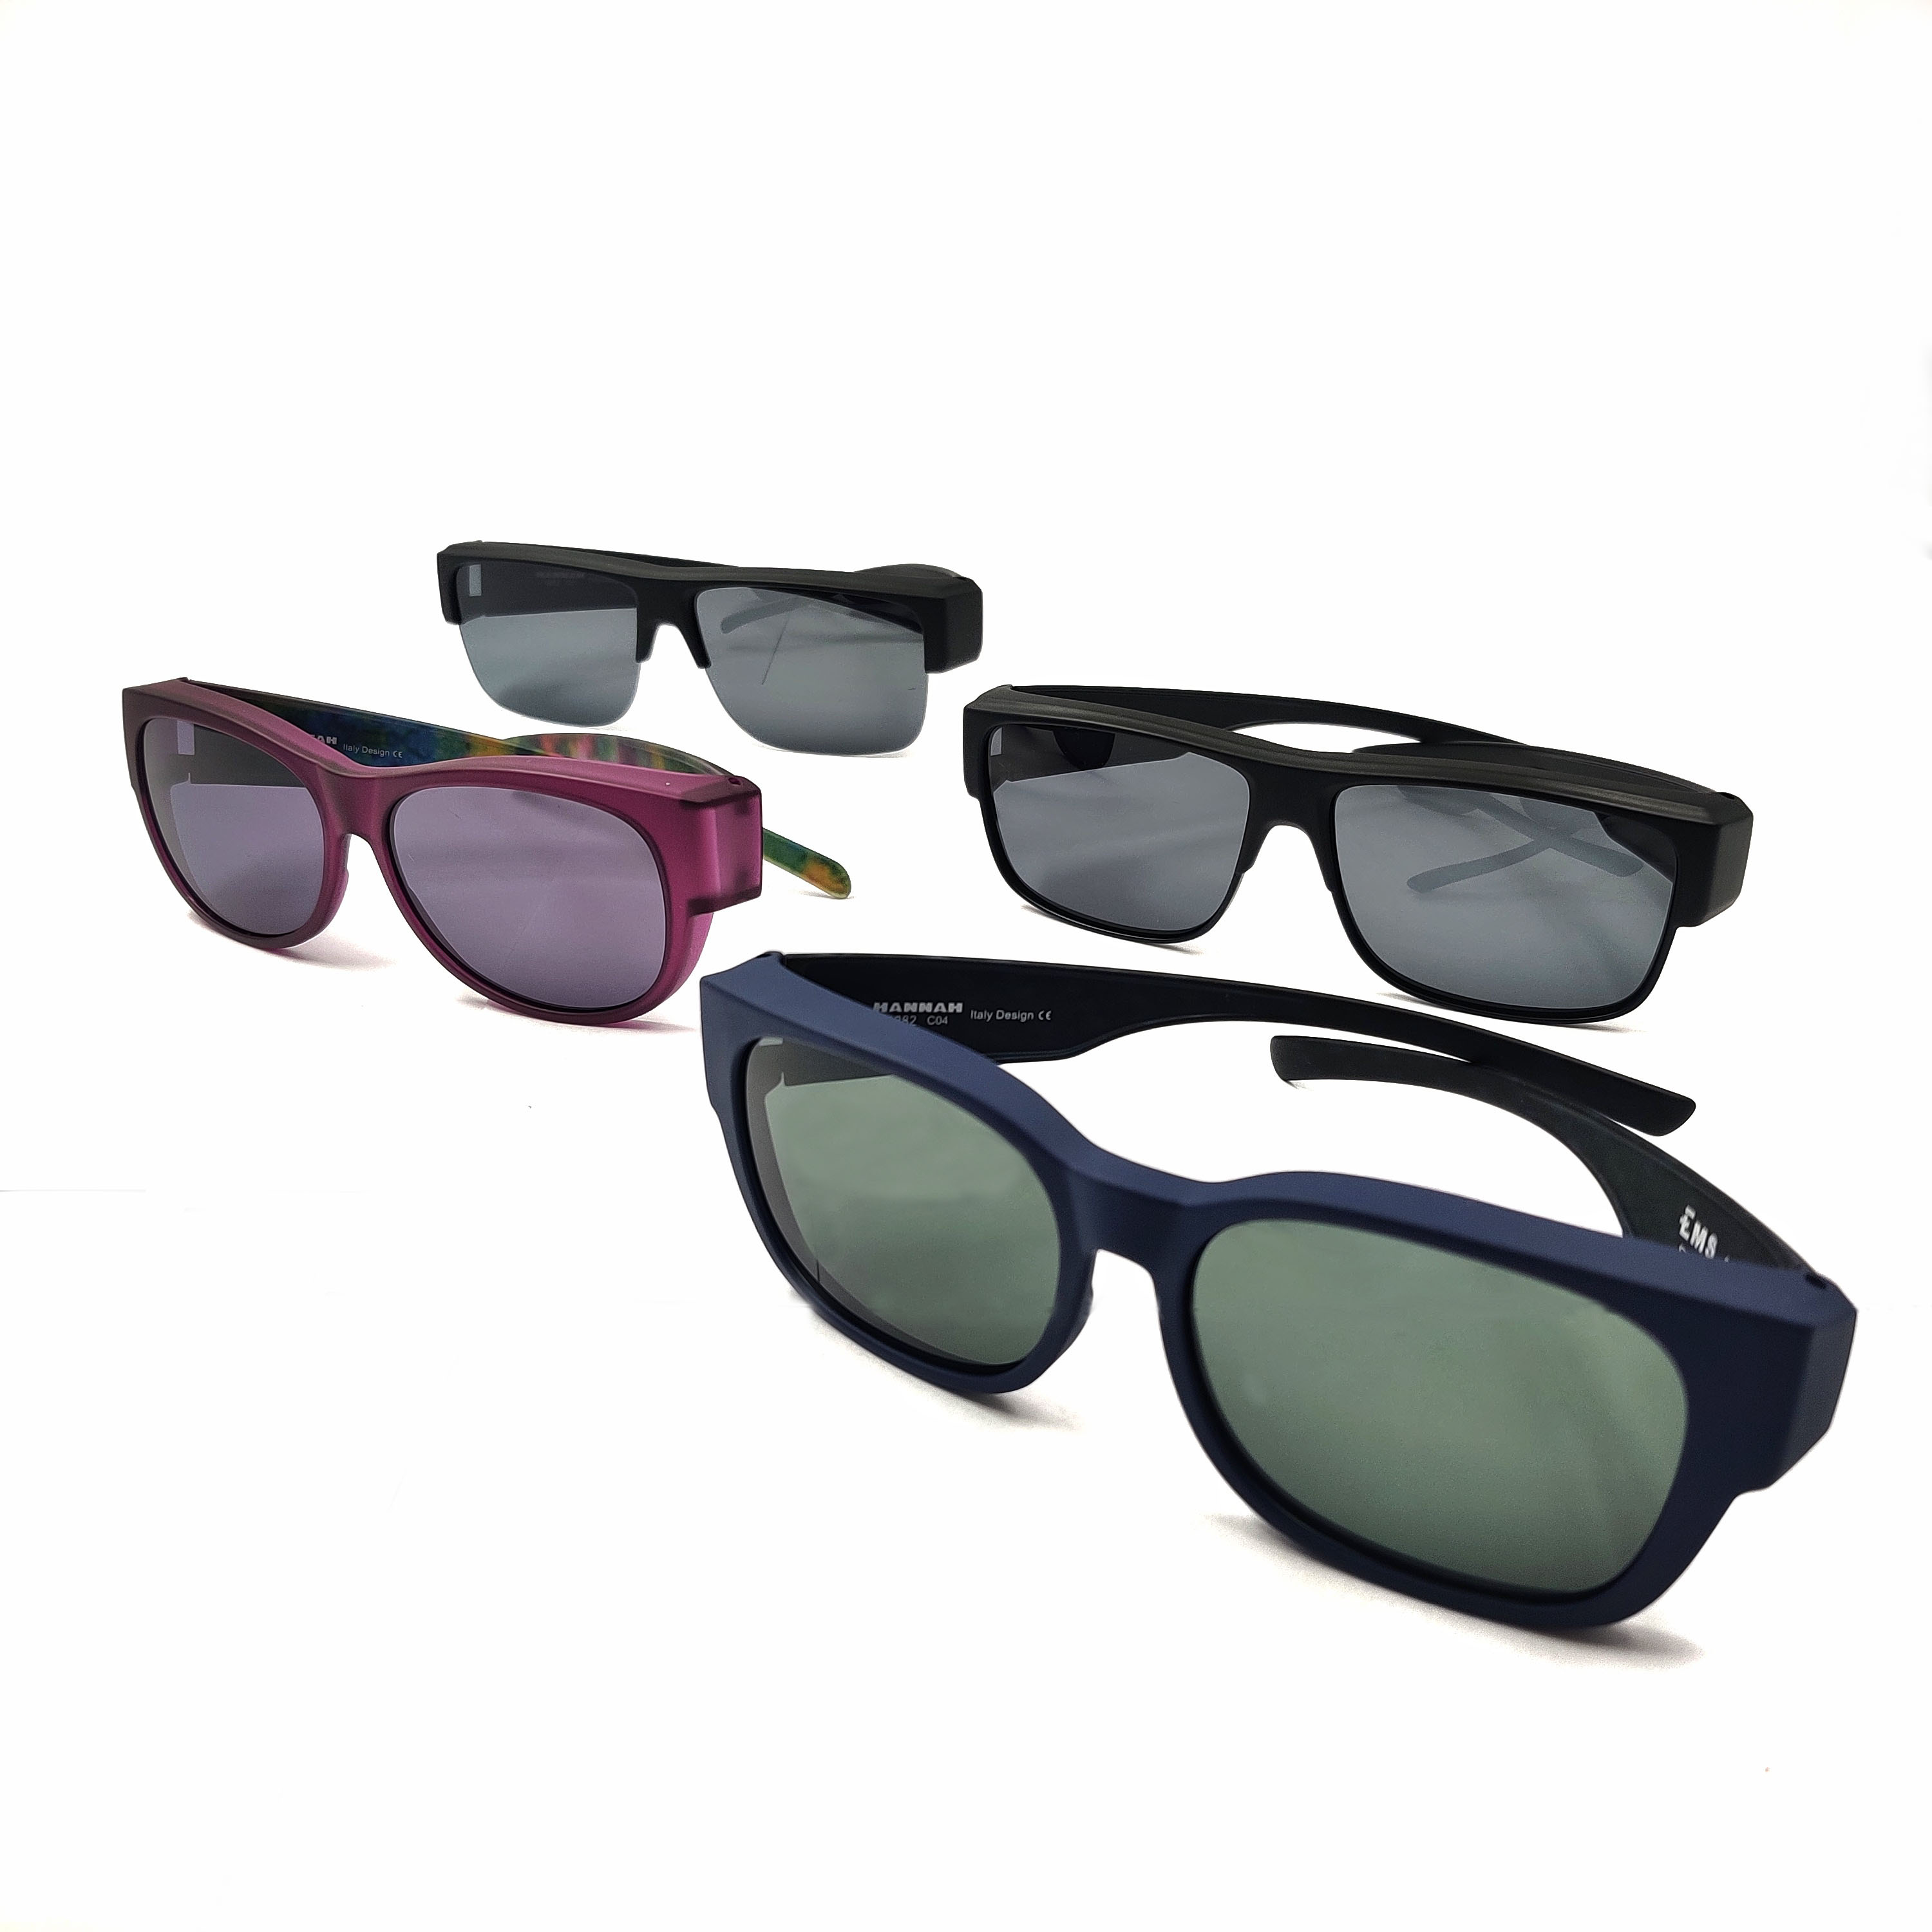 Gafas de sol ajustables para conducir, fabricante de gafas de sol Alibaba, gafas de sol graduadas personalizadas